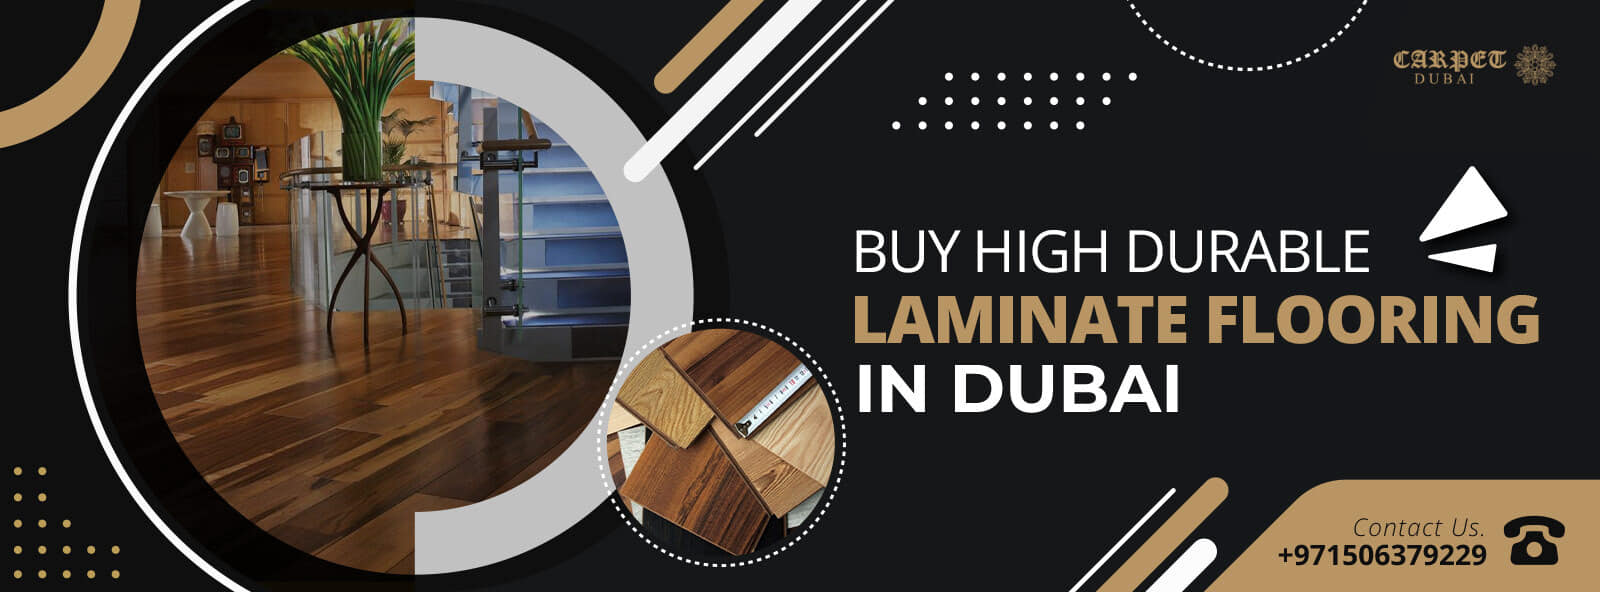 Laminate-Flooring-in-UAE (1)